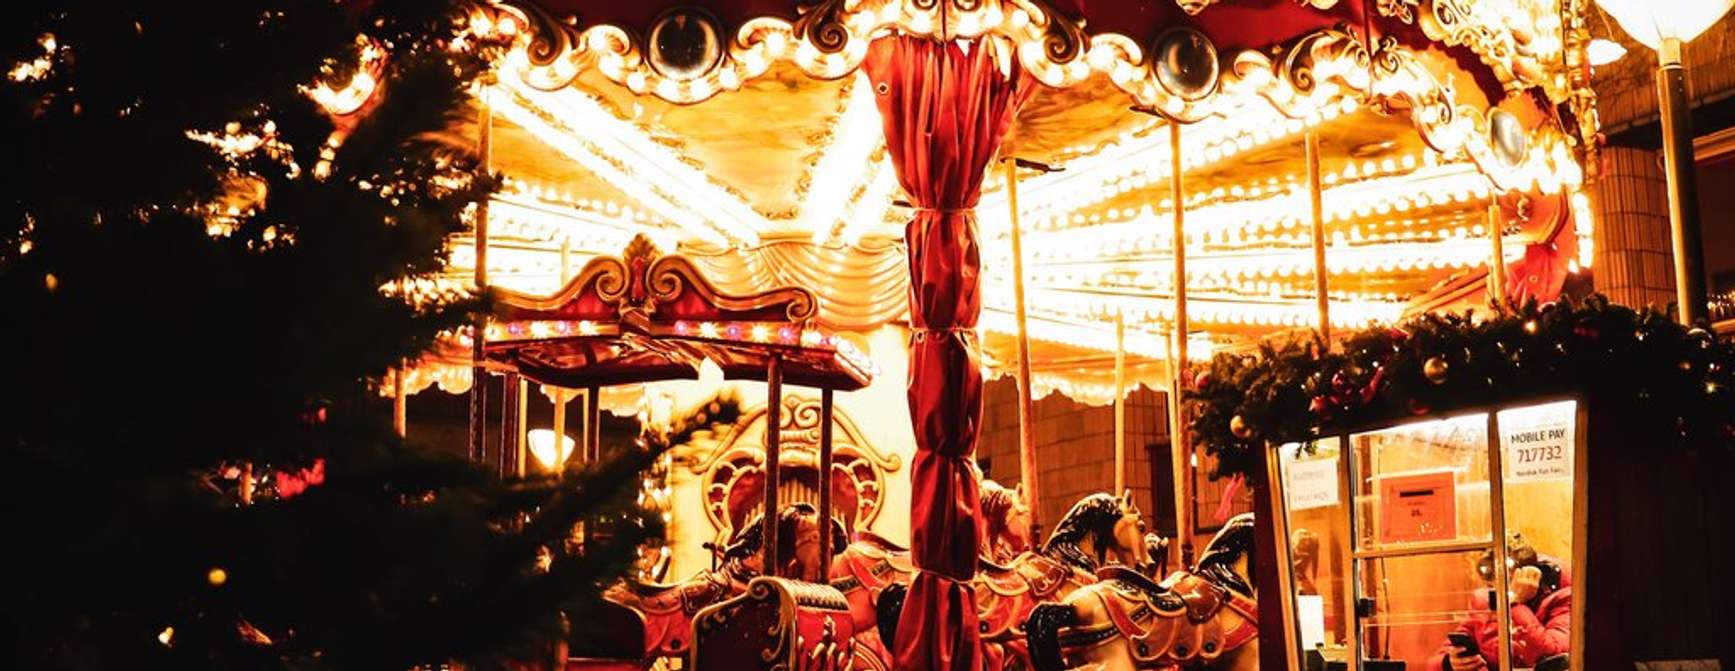 Karusell opplyst med julelys. Foto.